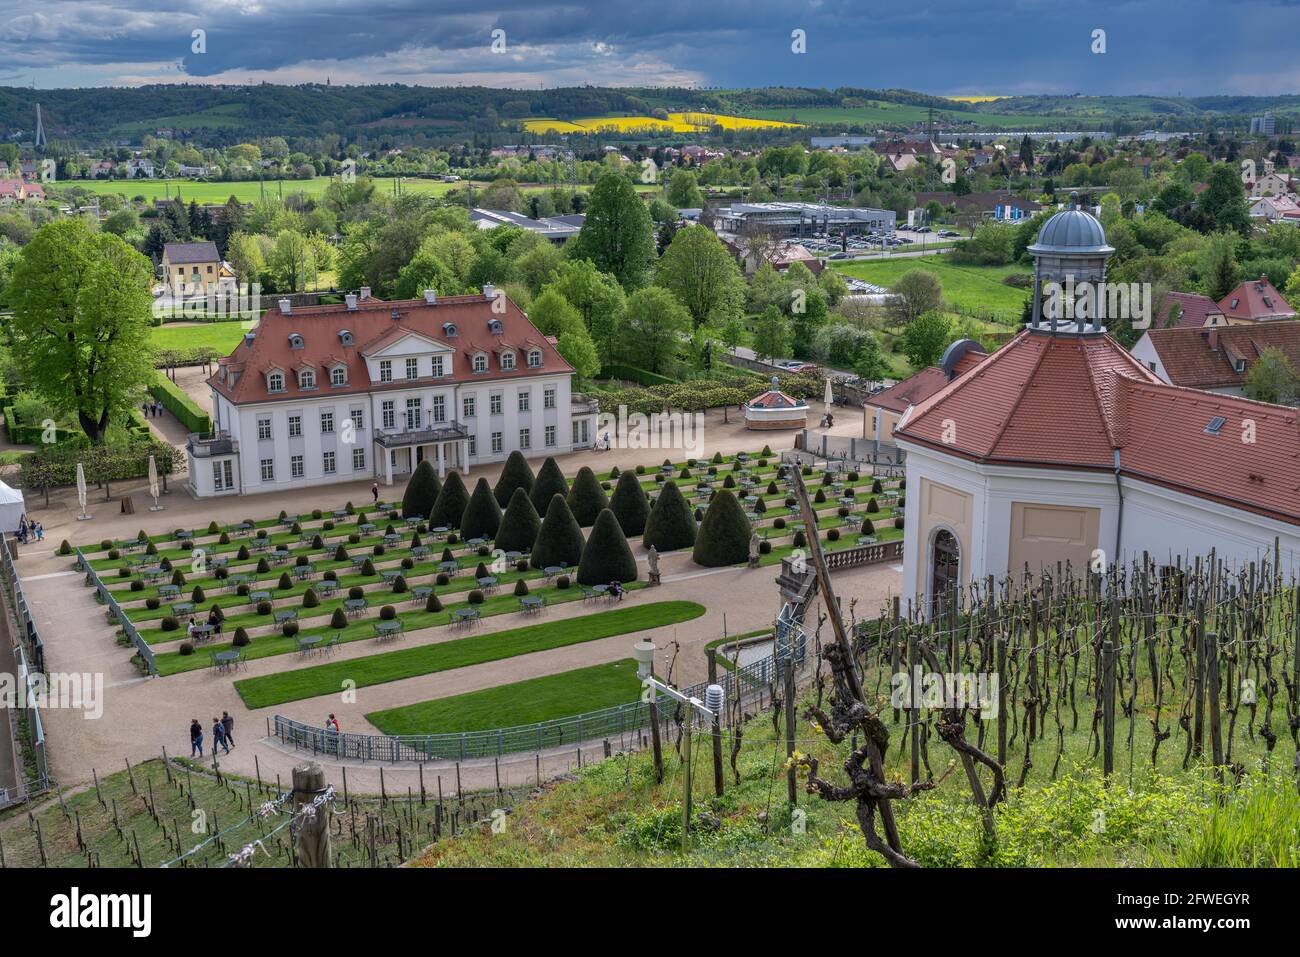 Weinwanderweg Sachsen, Schloss Wackerbarth, Weinberge im Frühling im frischen Grün, mai Foto Stock